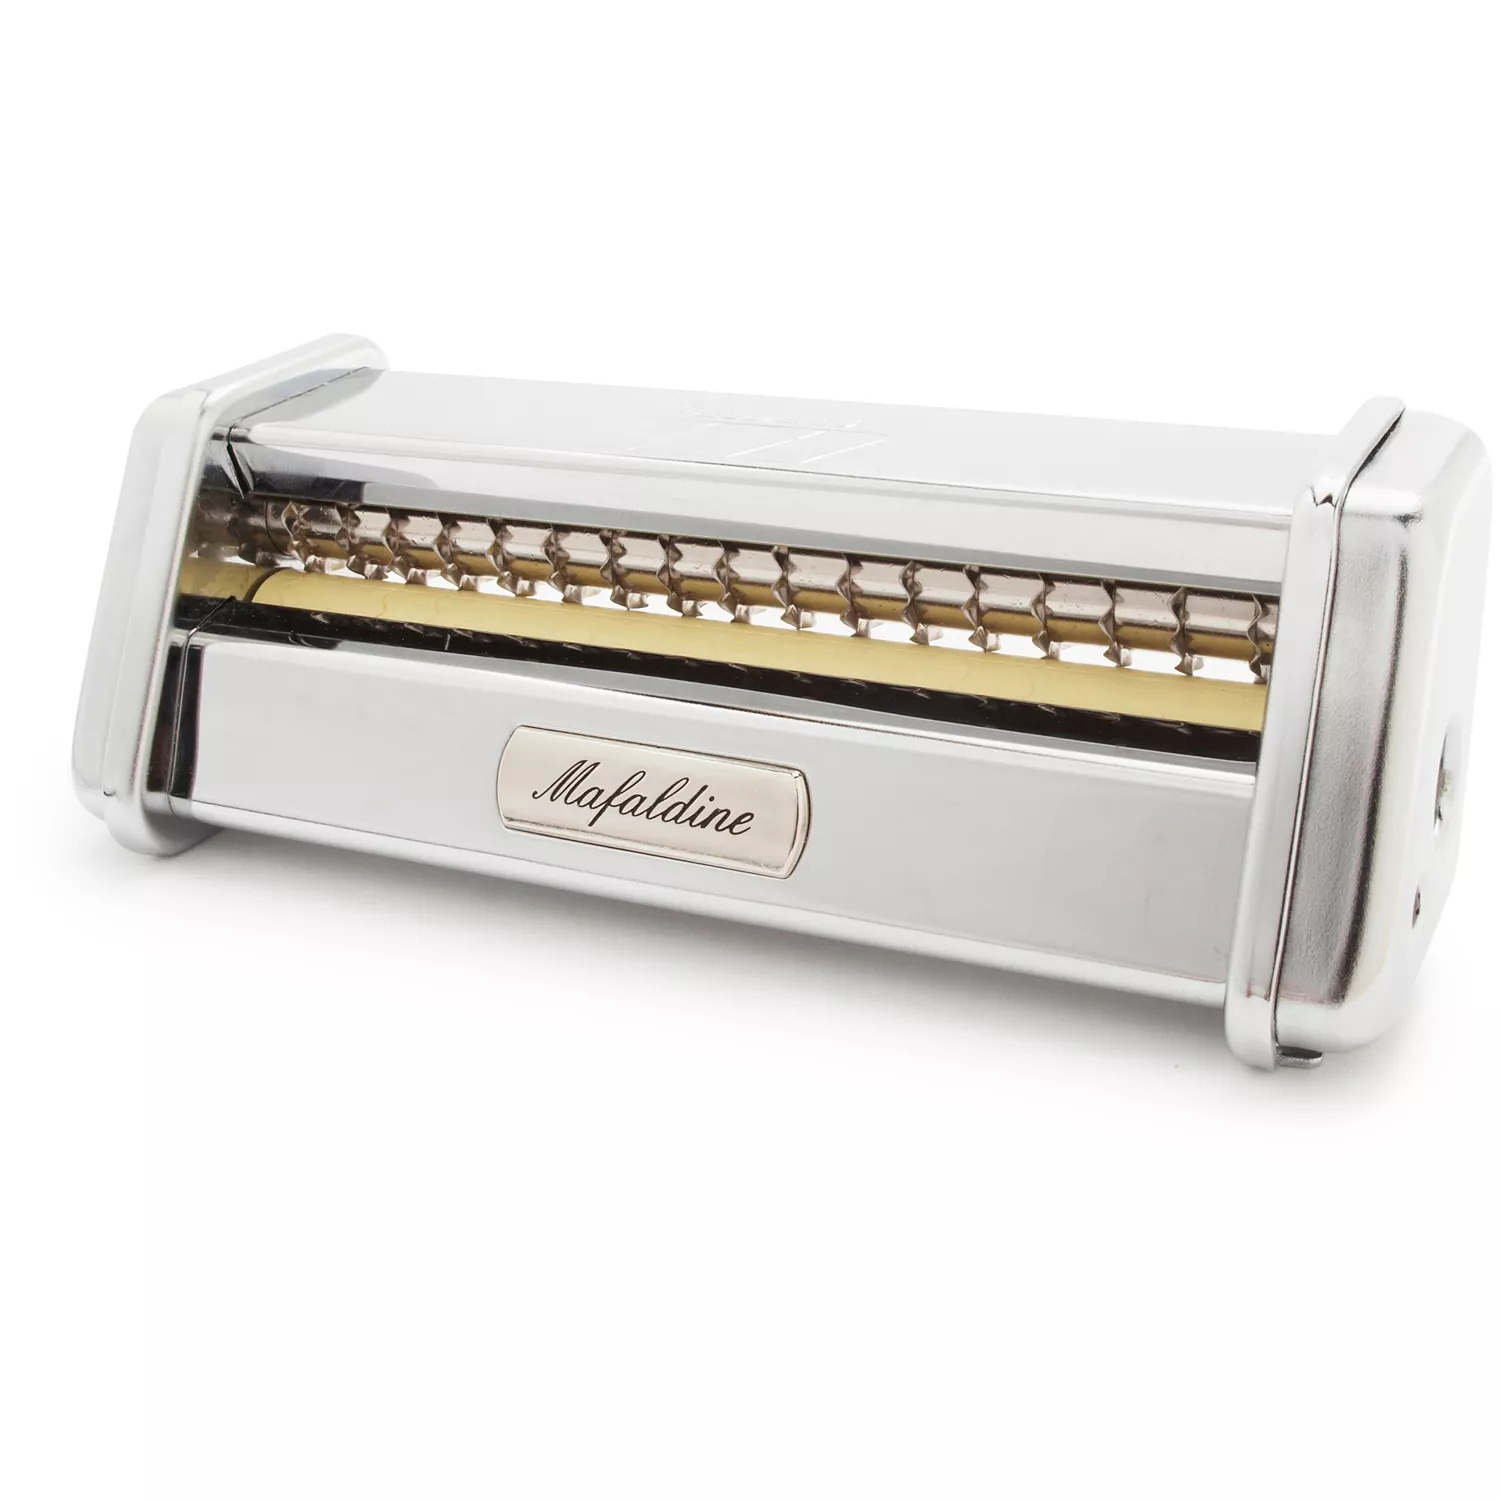 Lasagnette Cutter Attachment for the Marcato Pasta Machine